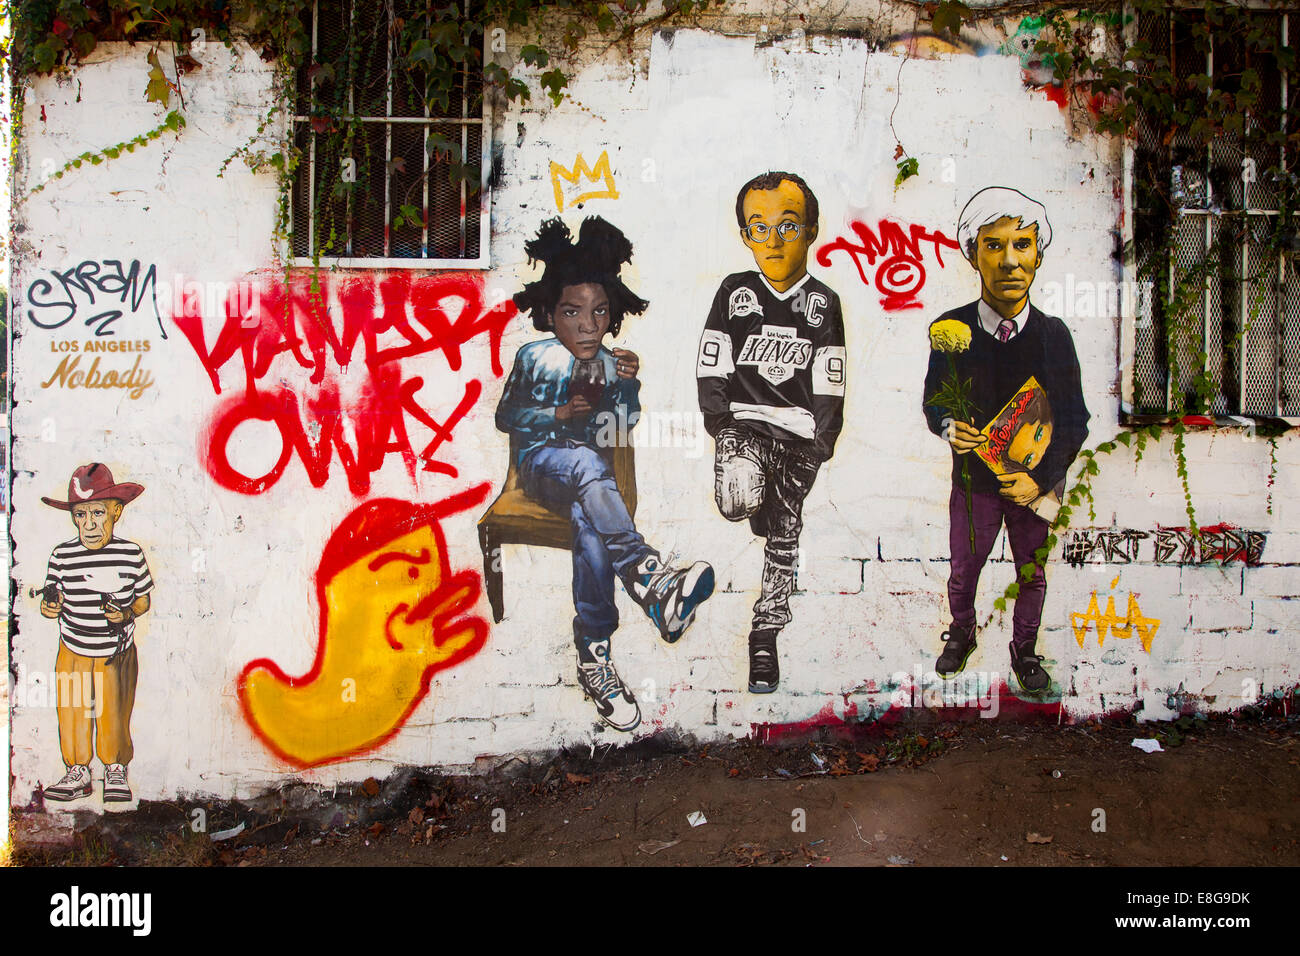 Andy Warhol, Basquiat, Keith Haring représenté dans l'Art de rue dans une ruelle près de Melrose Avenue, Los Angeles, Californie, États-Unis d'Amérique Banque D'Images